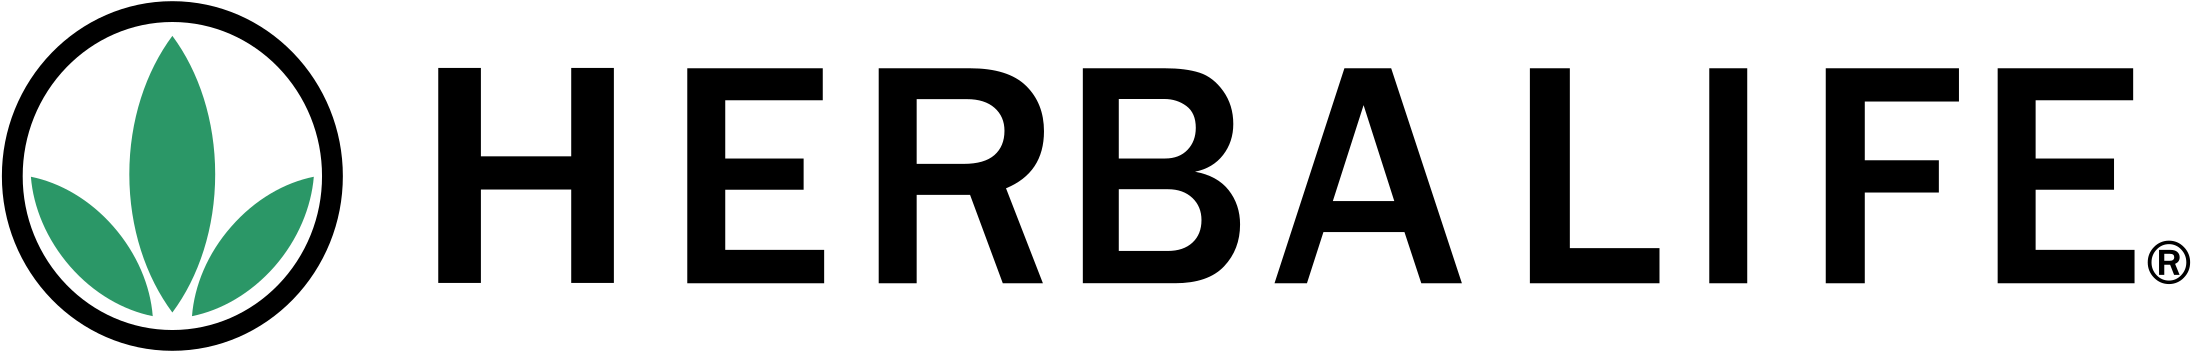 Herbalife Logo Png Transparent - Herbalife (2400x2400), Png Download